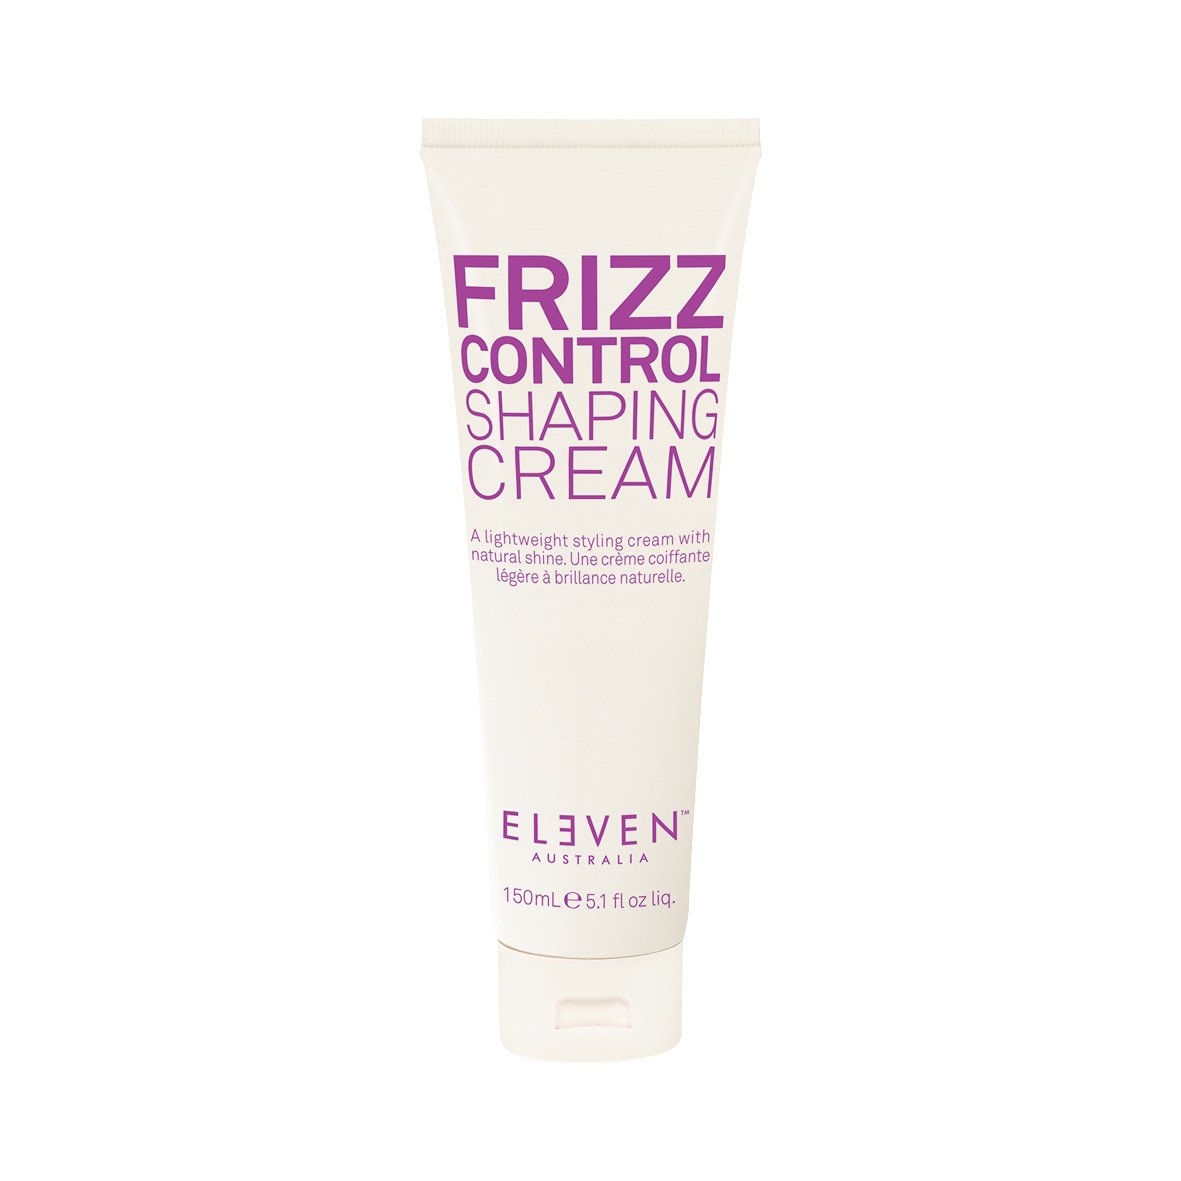 ELEVEN Australia Frizz Control Shaping Cream.jpg